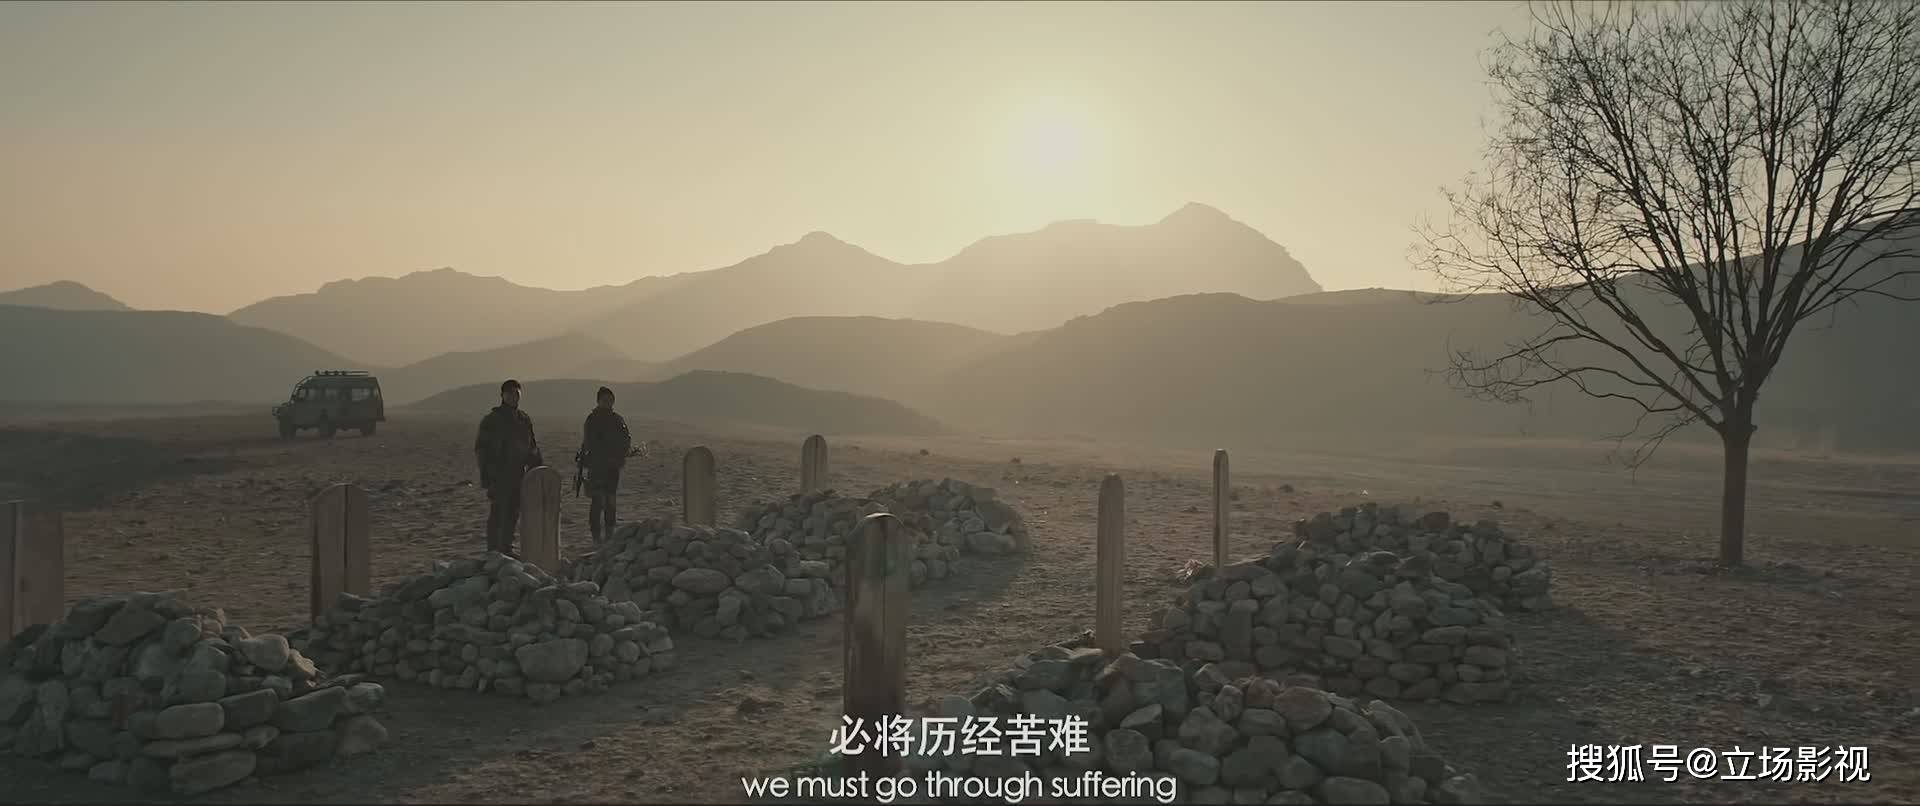 《战王》让我们看到了国产科幻战争题材电影的现实,中国科幻电影仍有